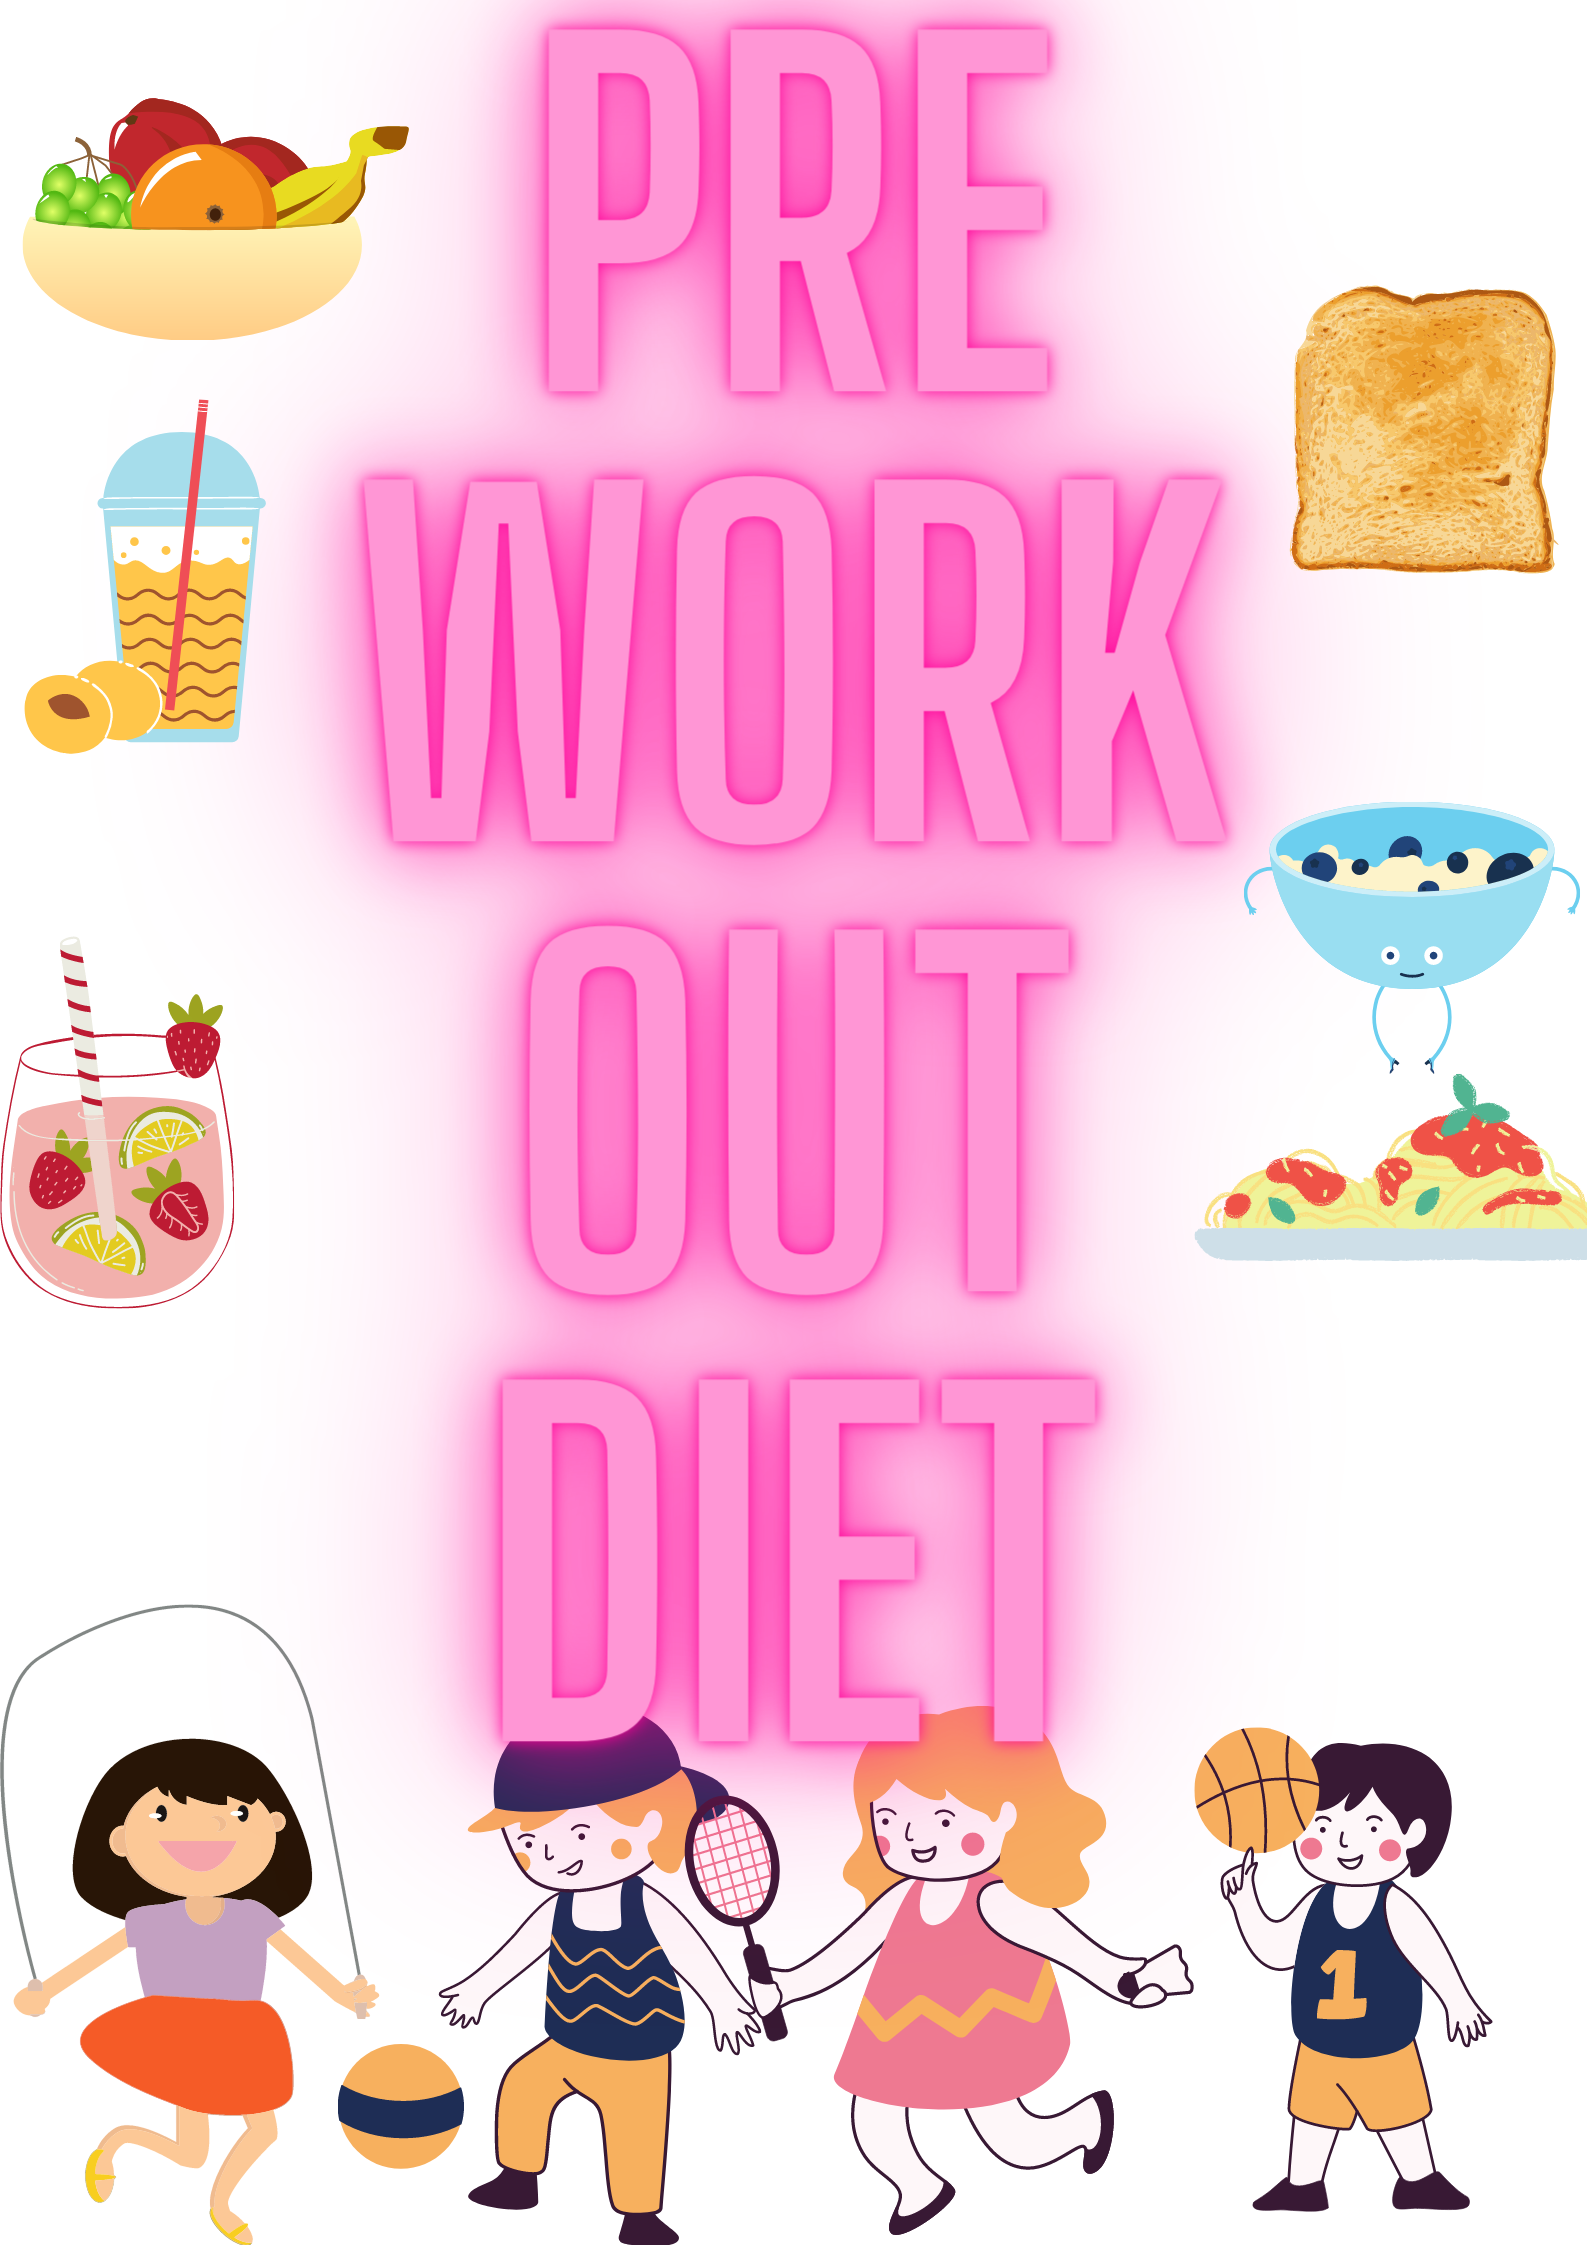 Pre workout diet